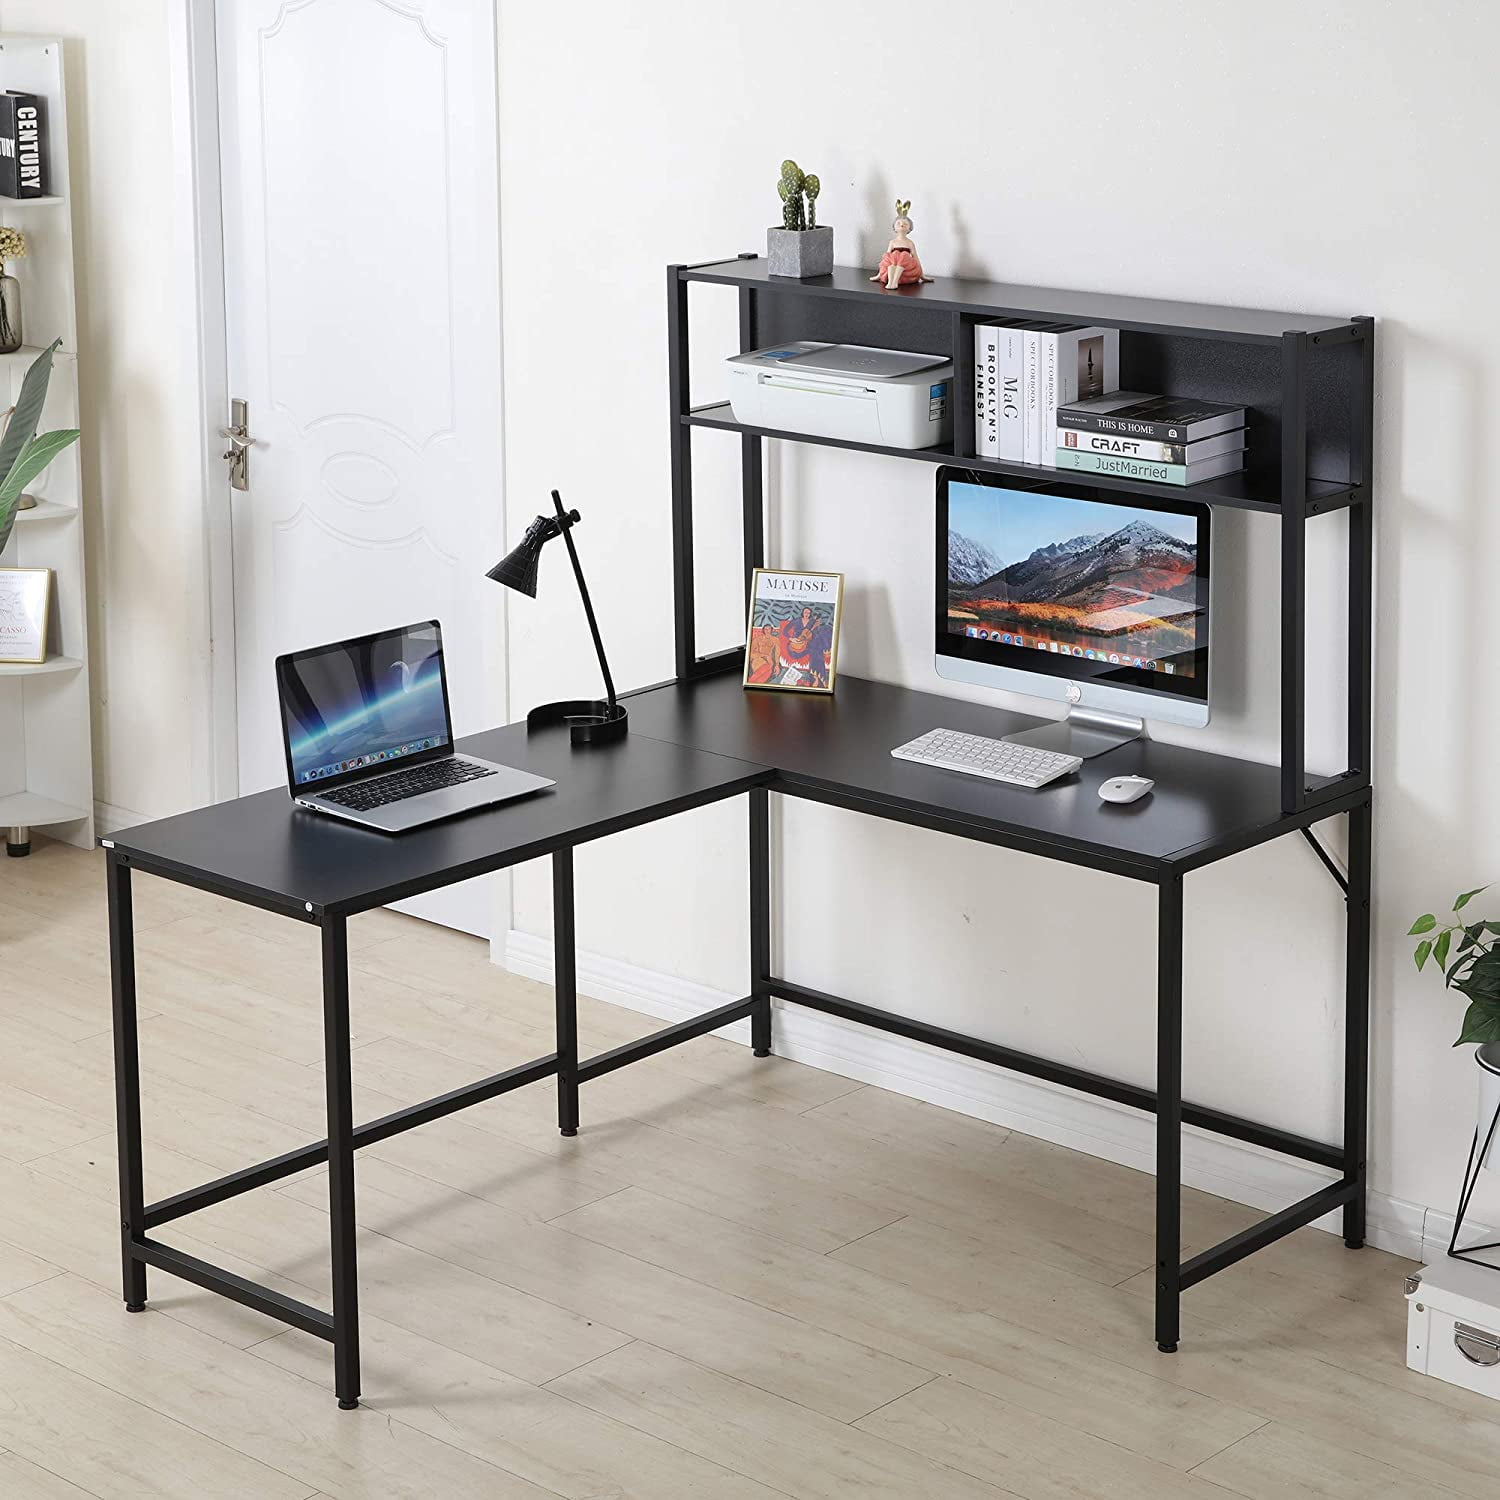 55" L-Shaped Desk Corner Computer Desk Writing Workstation Table w/Hutch Black 